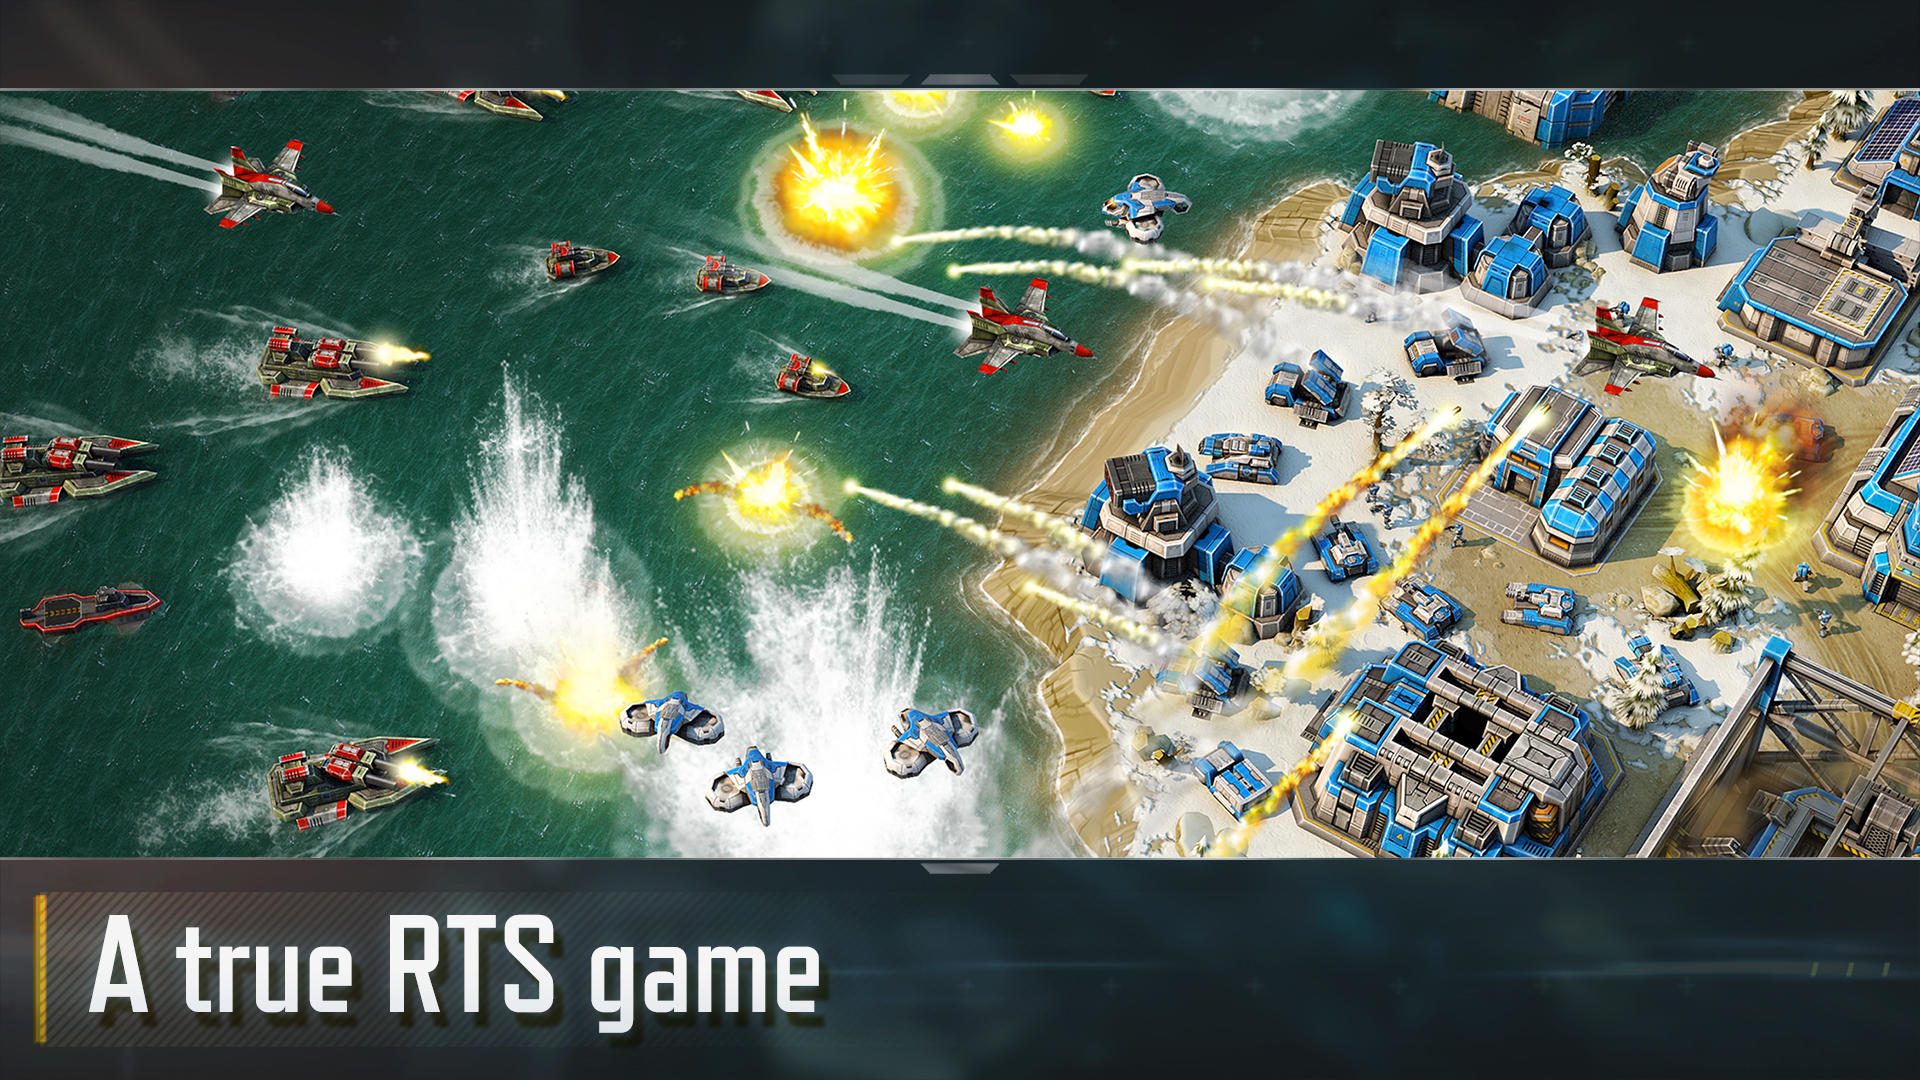 Screenshot 1 of युद्ध 3 की कला: आरटीएस रणनीति खेल 4.4.10